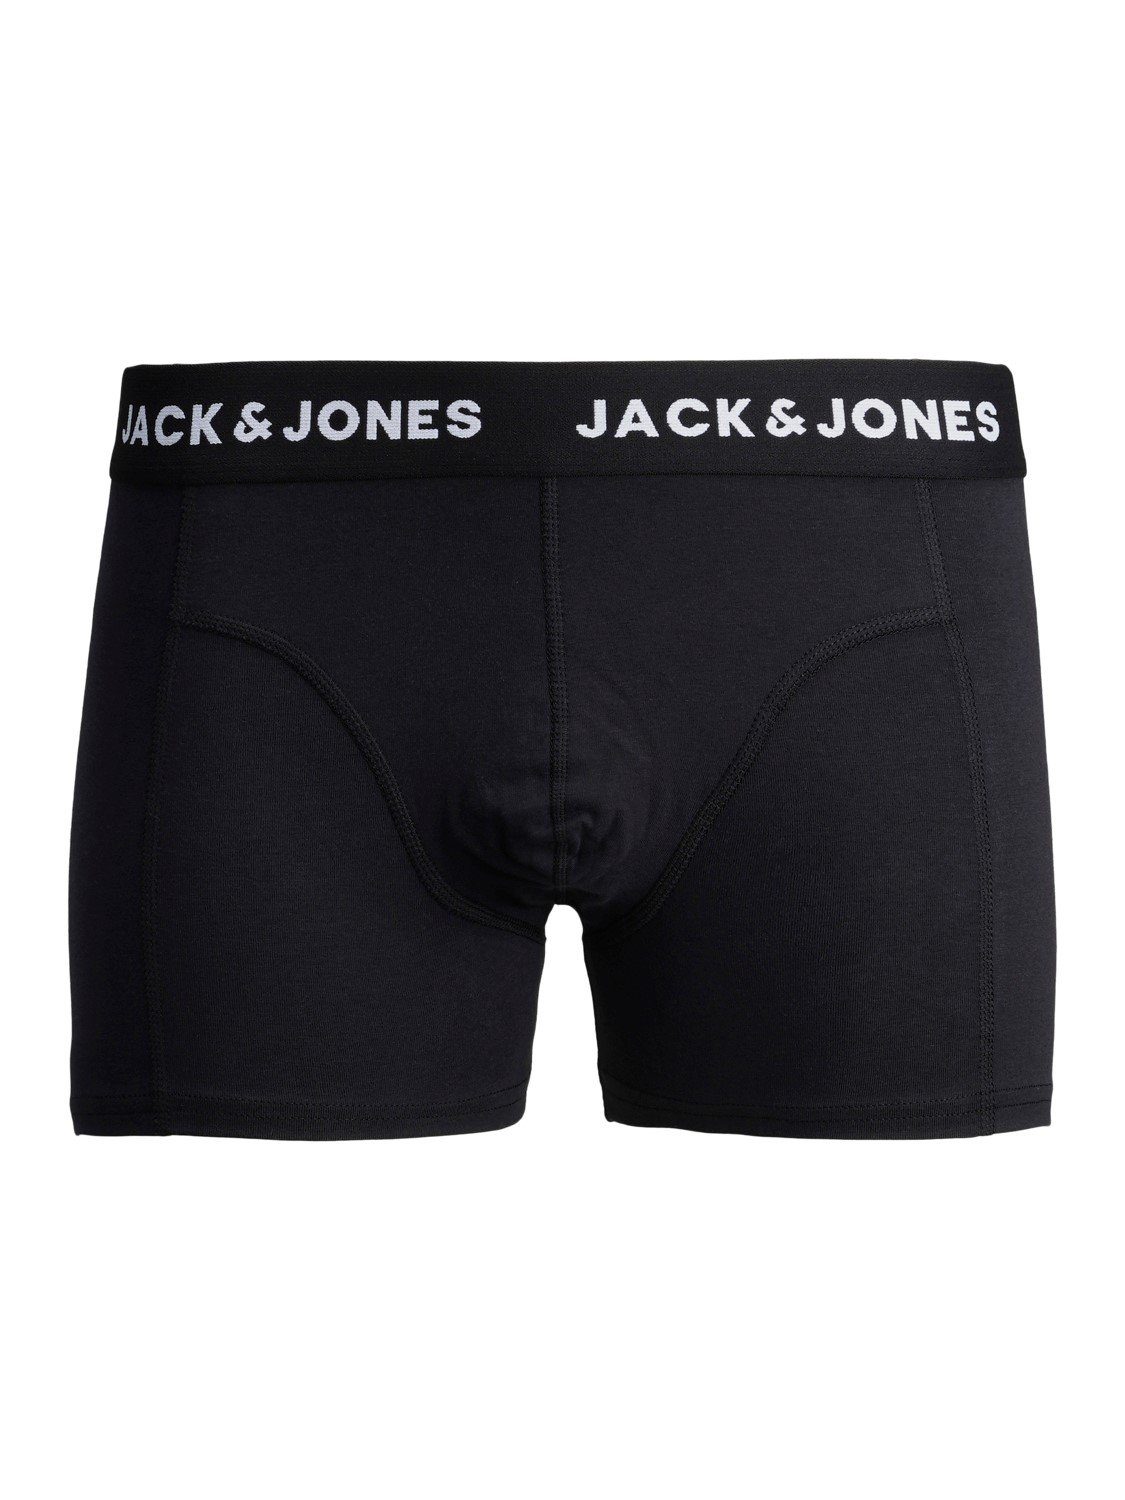 Jack & JNR Slip Junior JACDENIM Jones PACK 3 TRUNKS